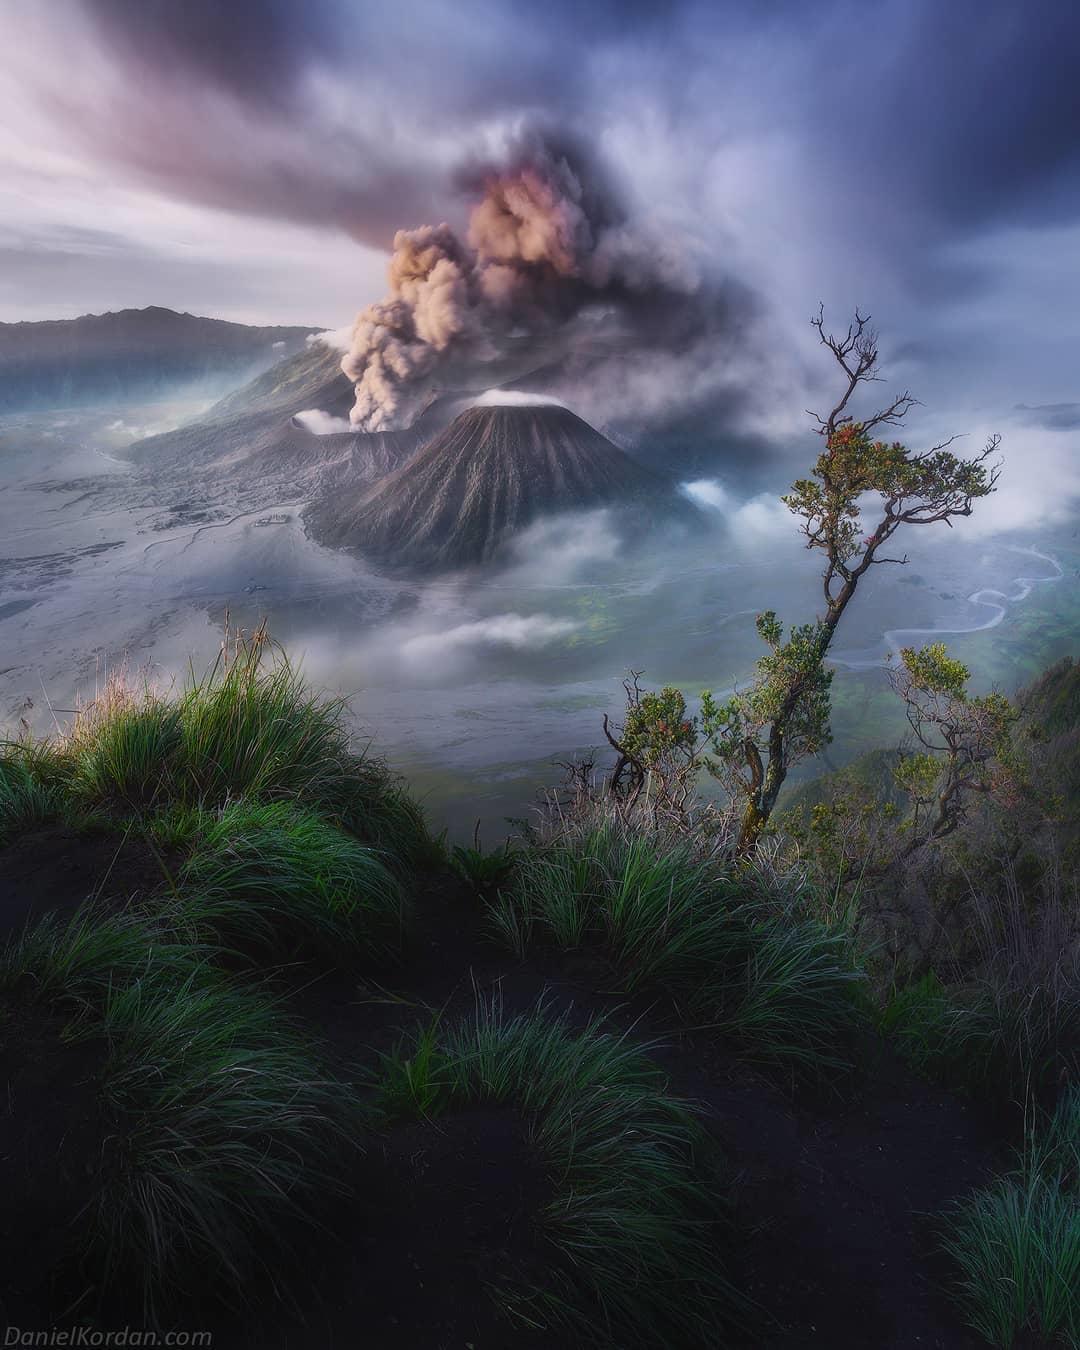  婆罗摩火山，来自摄影师Daniel Kordan。 